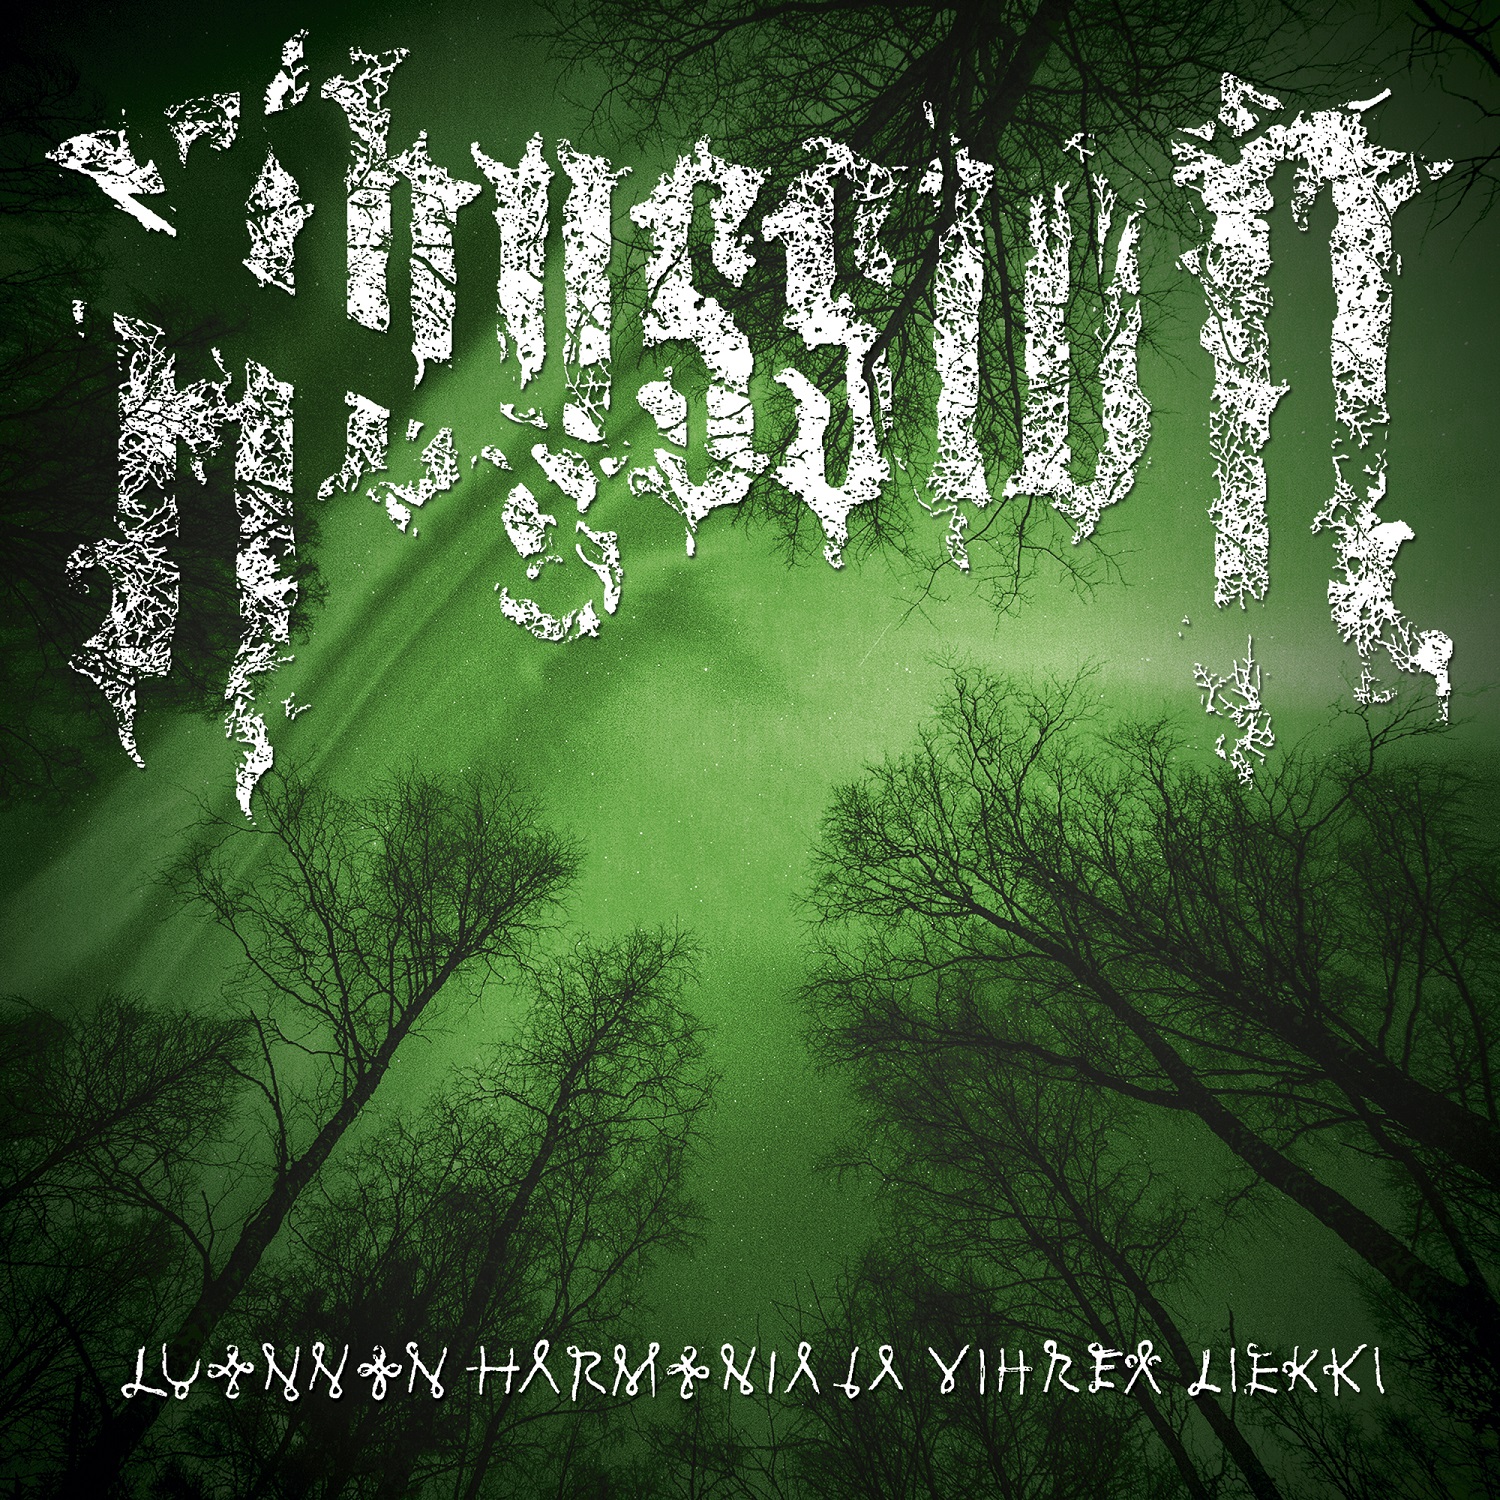 Abyssion – Luonnon Harmonia Ja Vihreä Liekki Review